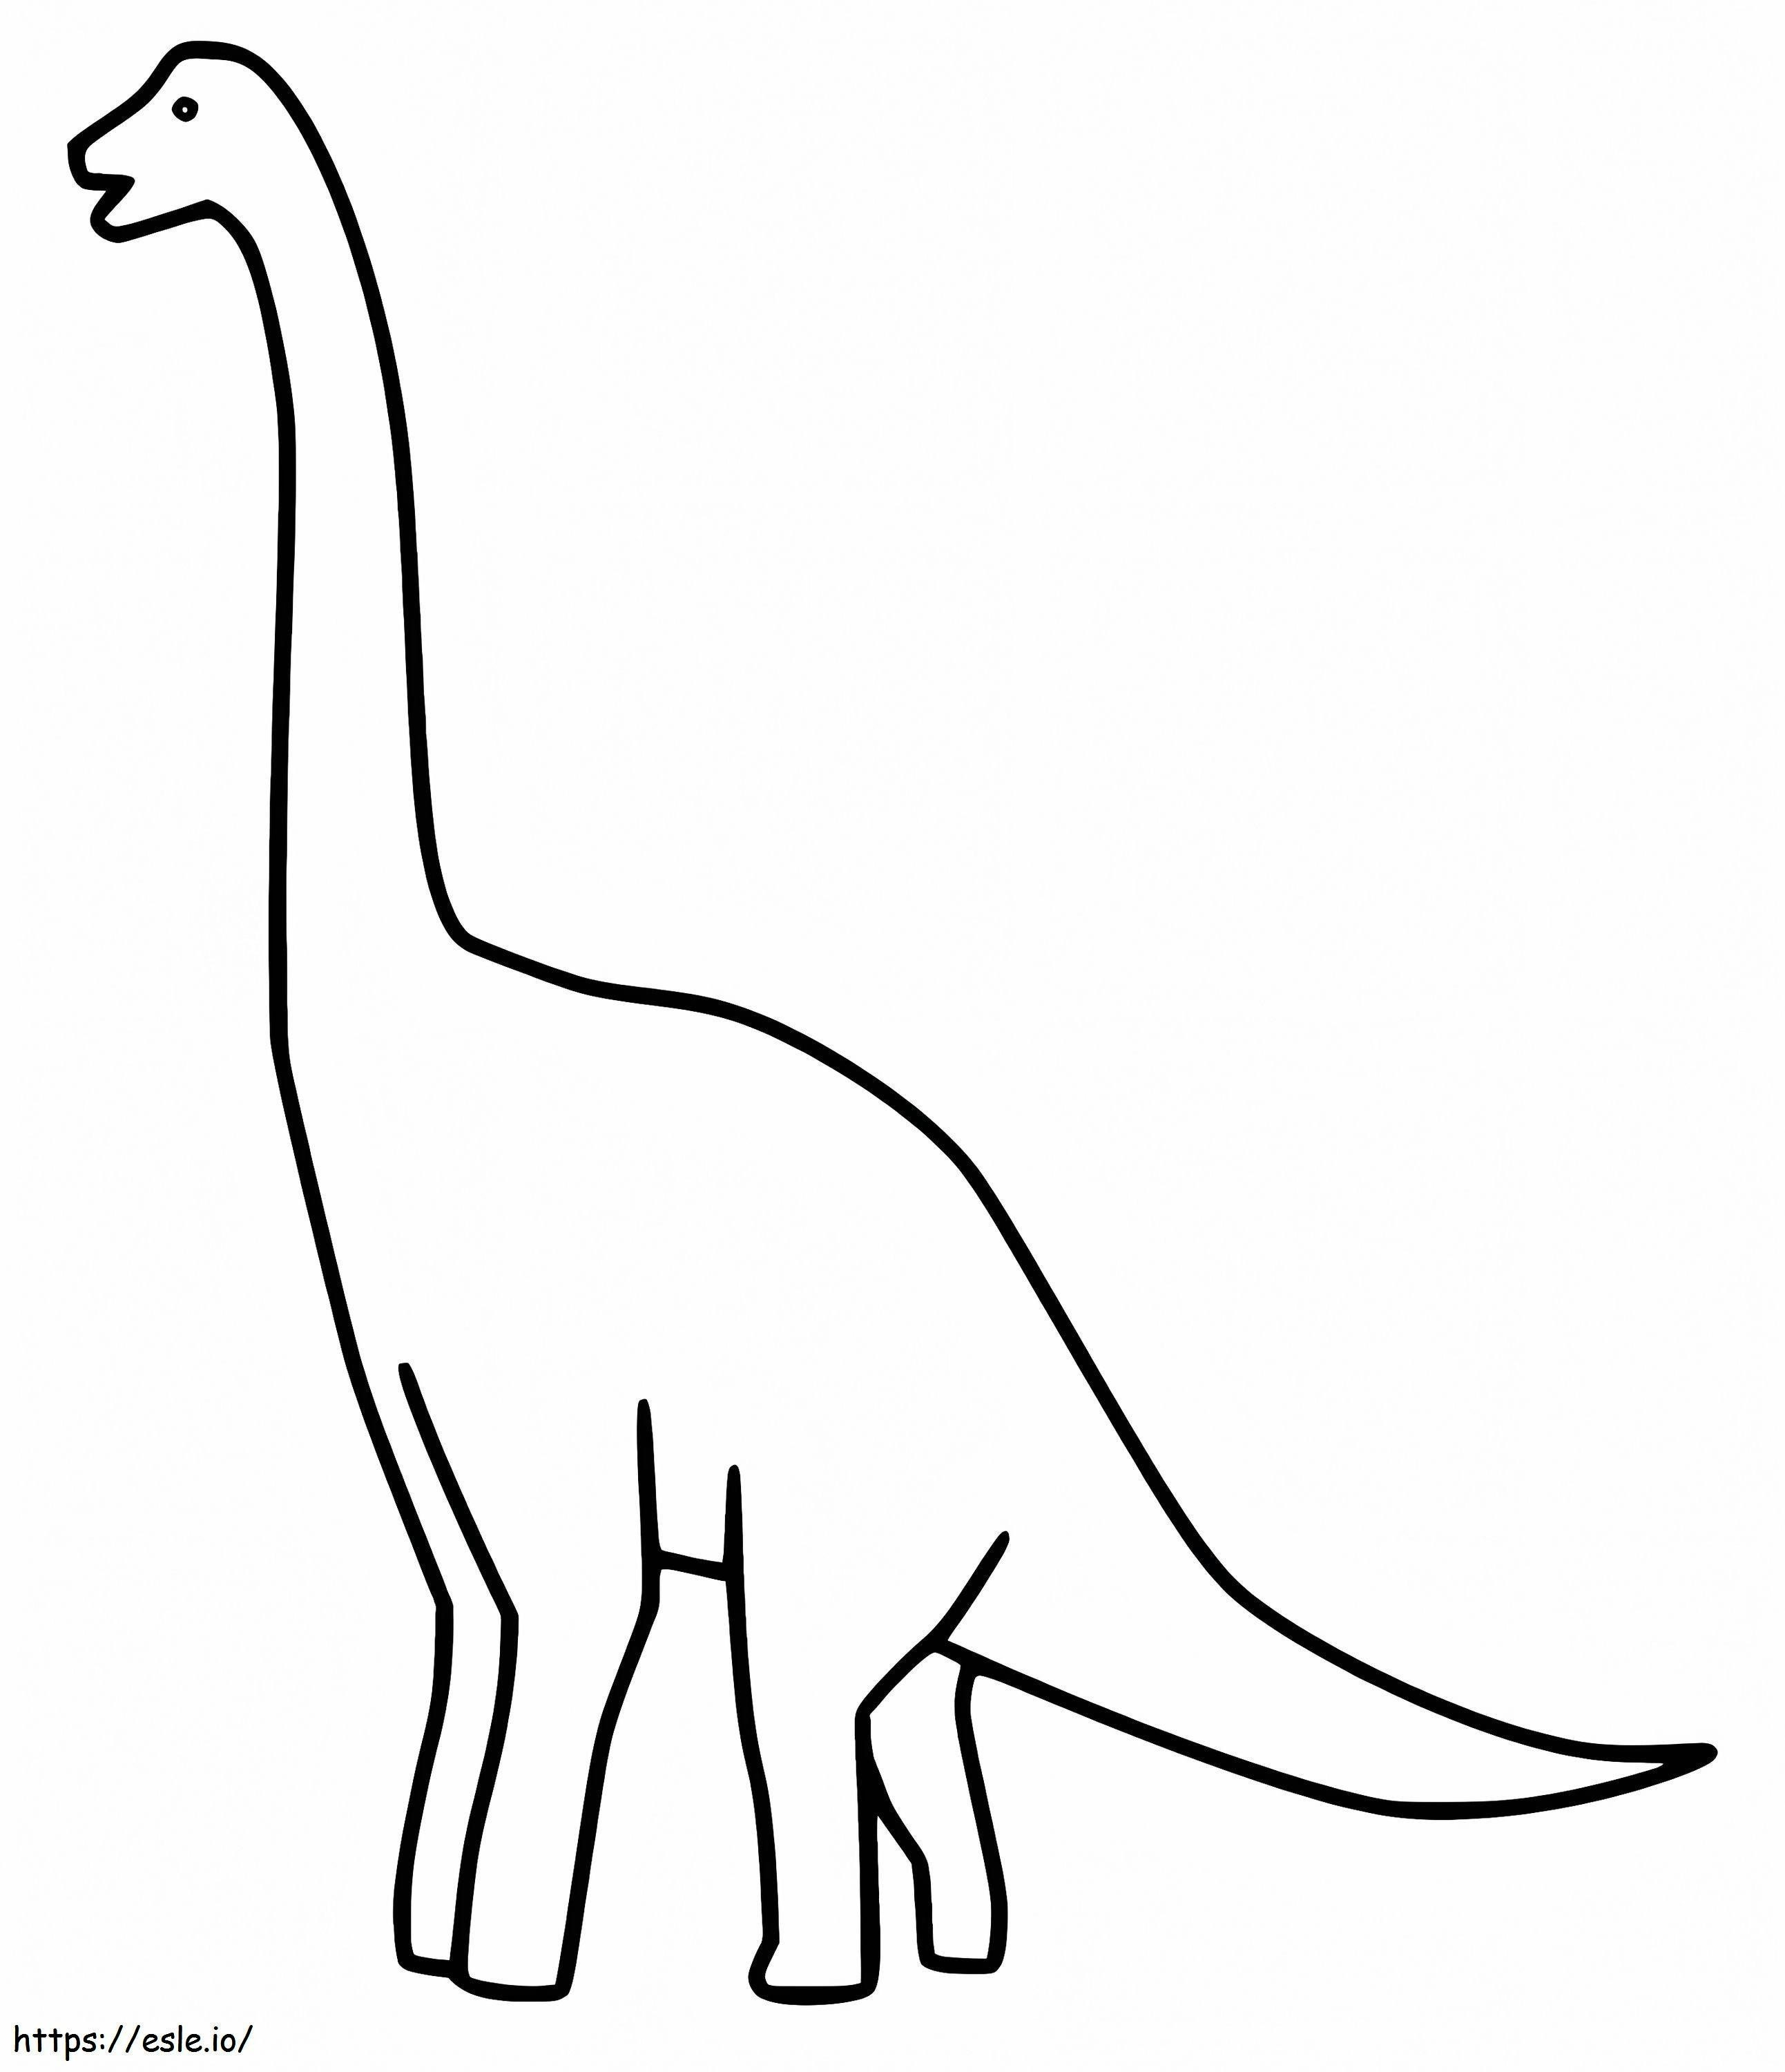 Brachiosaurus simplu de colorat